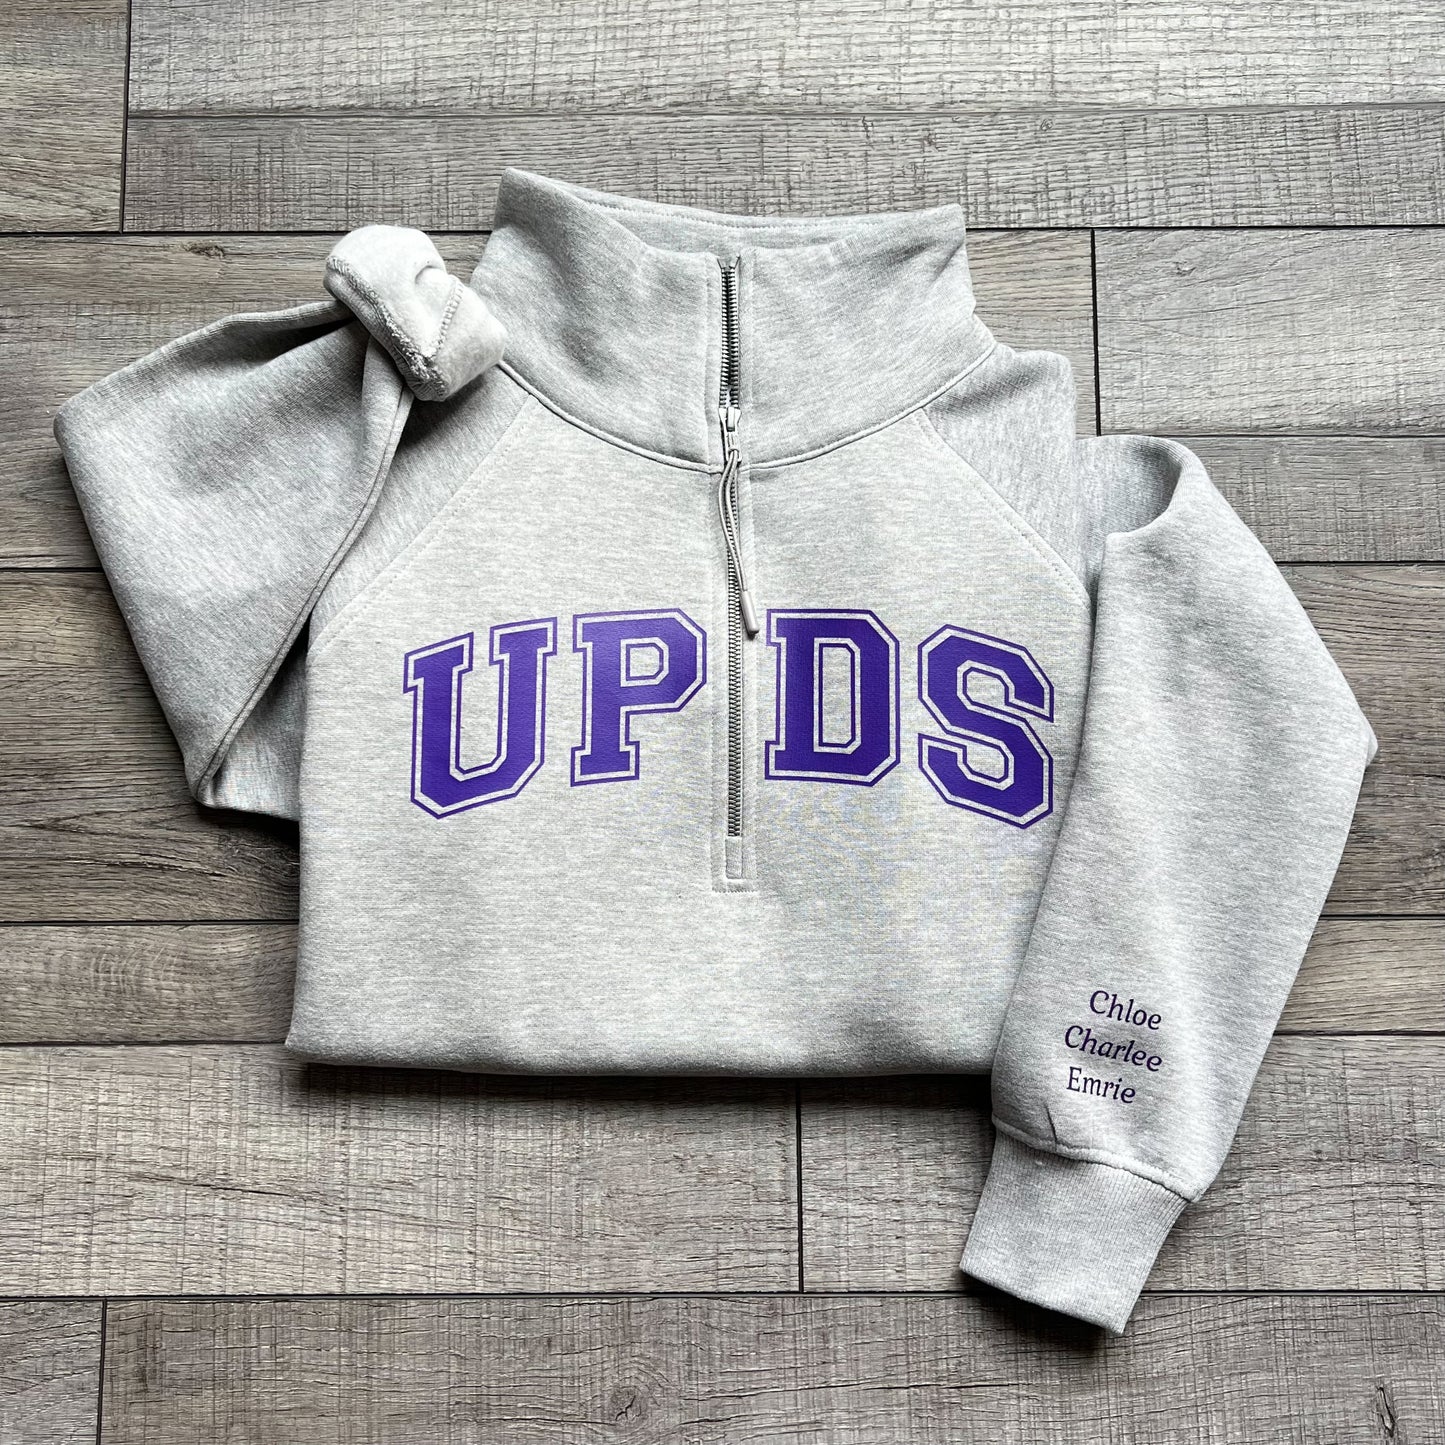 UPDS Collegiate Sweatshirt- Women’s Collared 1/2 Zip: 2 Colors